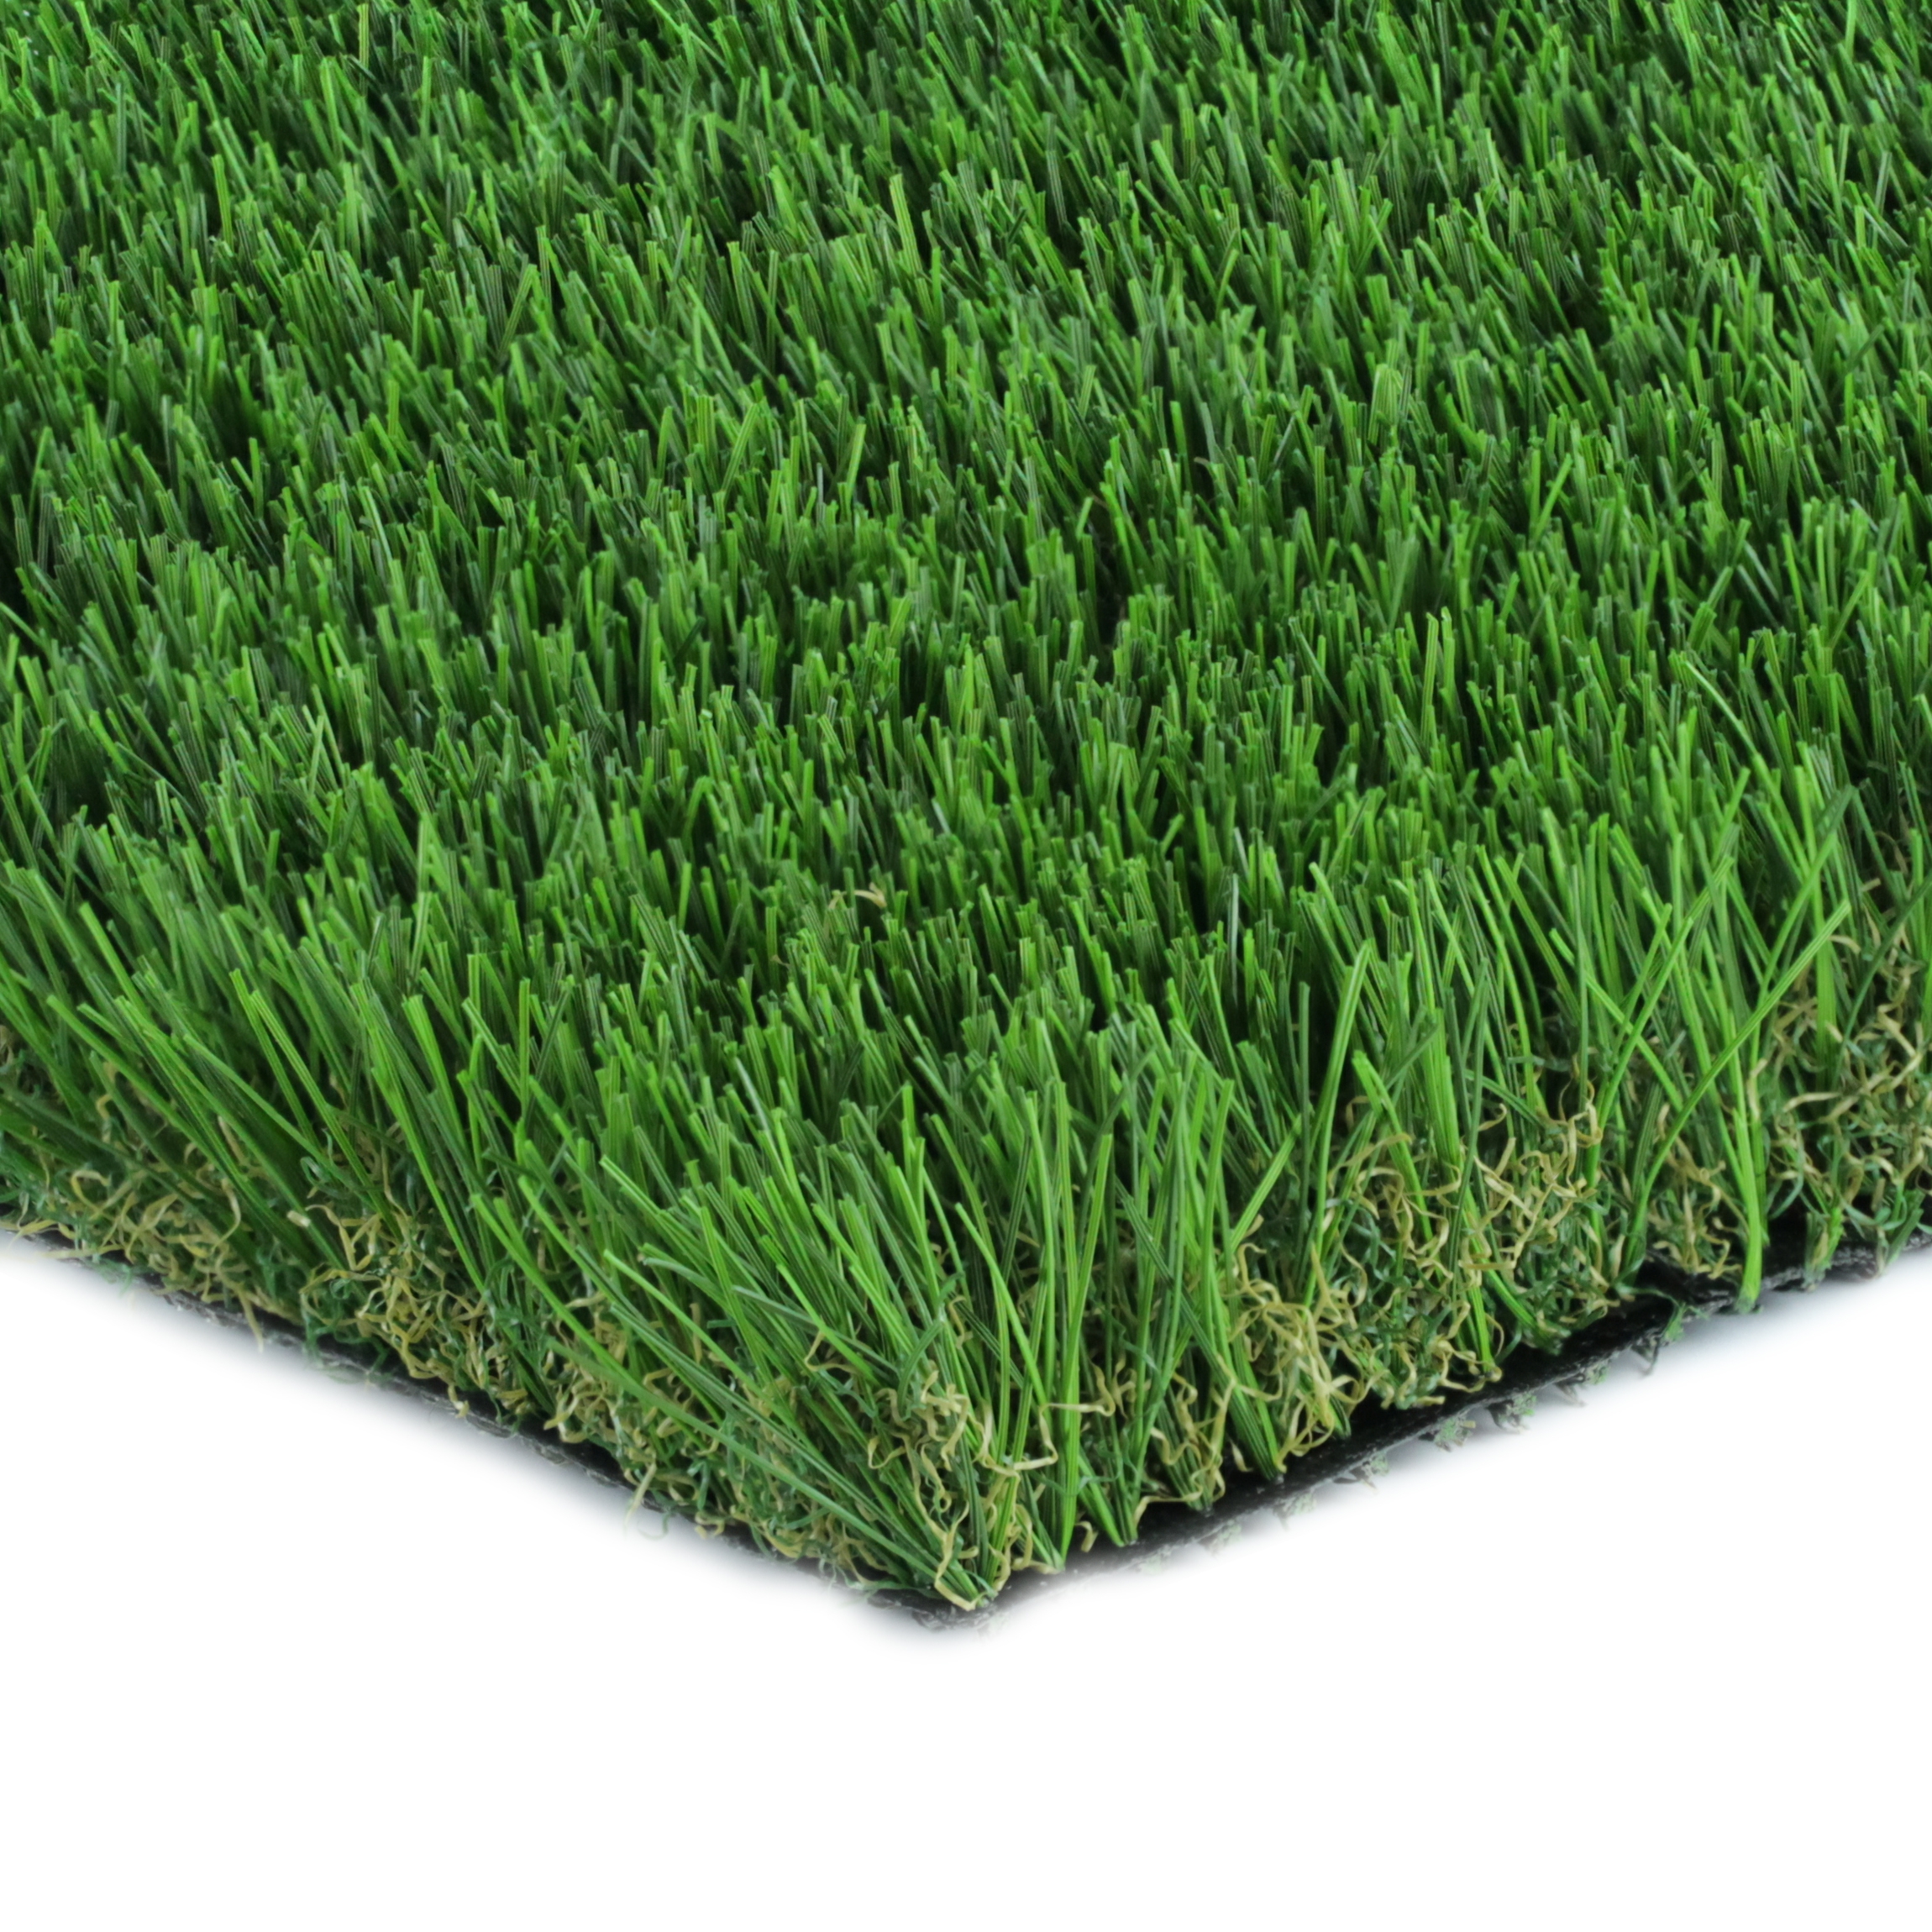 Artificial Grass Malibu Classic Best Artificial Grass